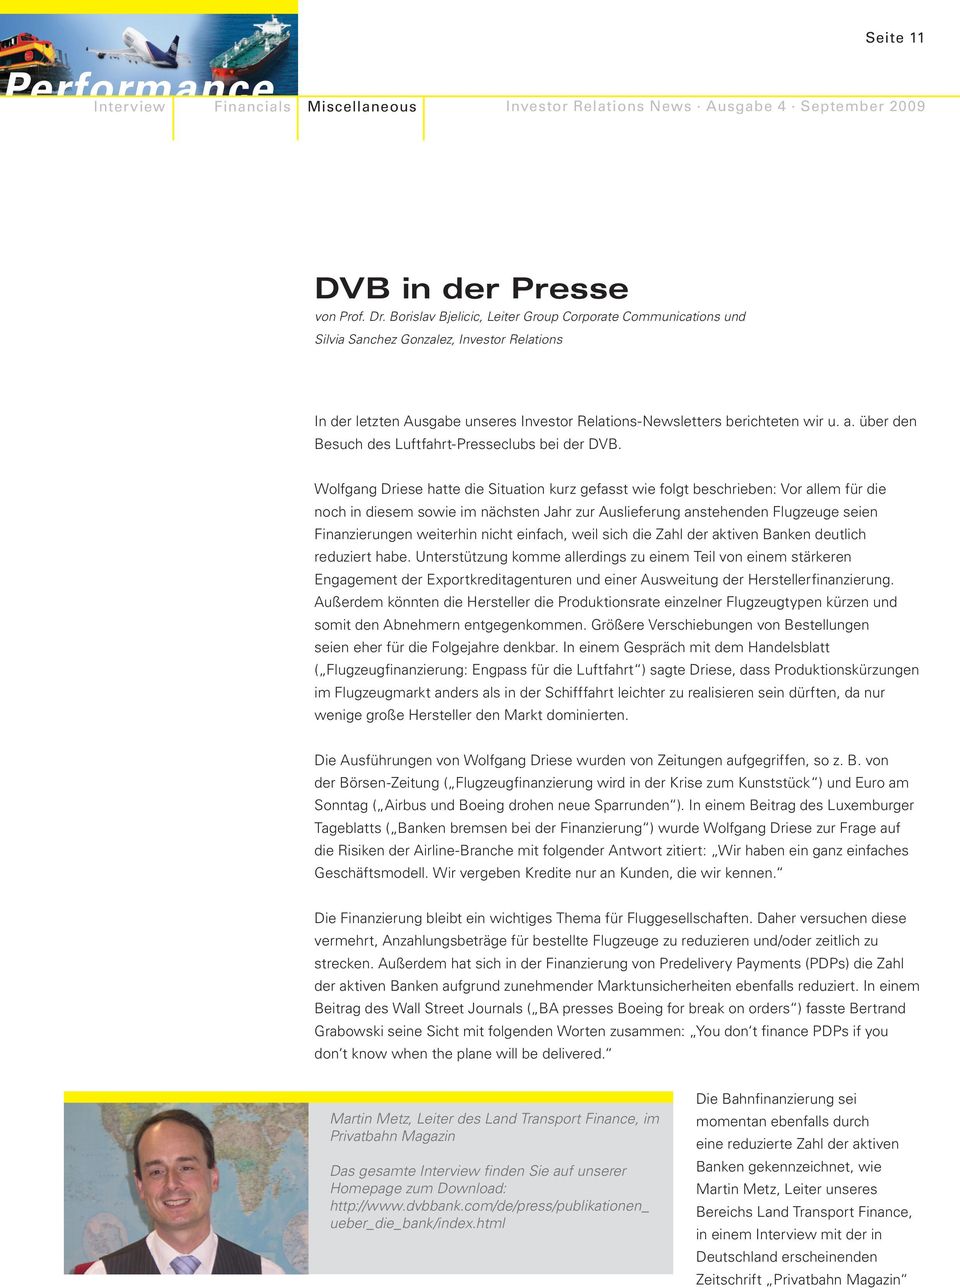 über den Besuch des Luftfahrt-Presseclubs bei der DVB.